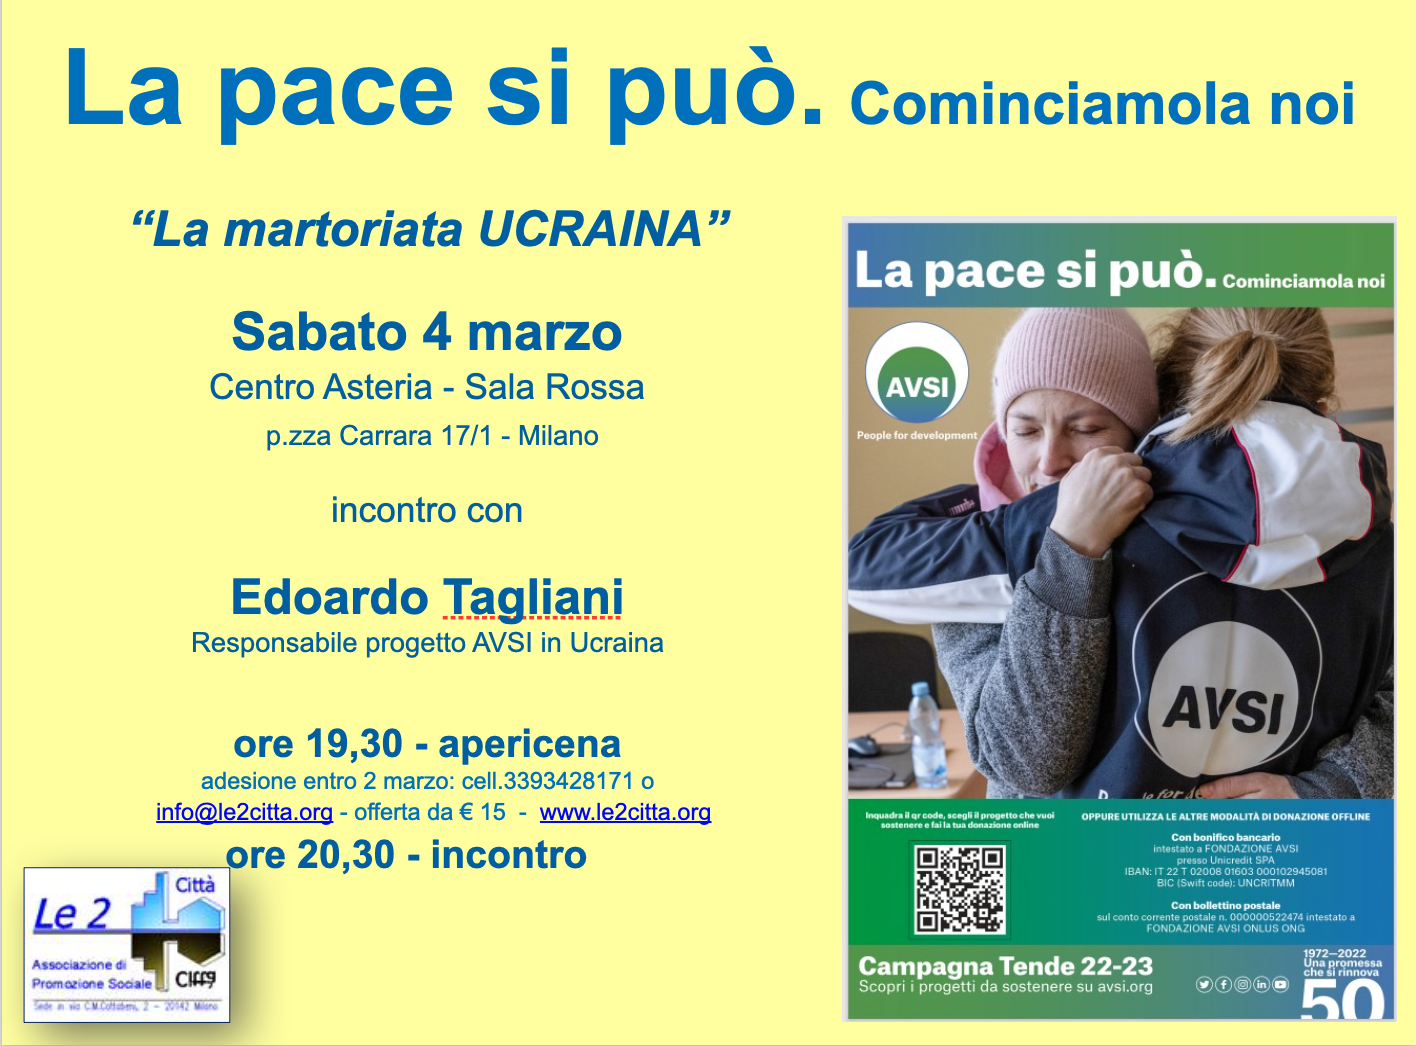 Featured image for “Milano: La pace si può. Cominciamola noi”